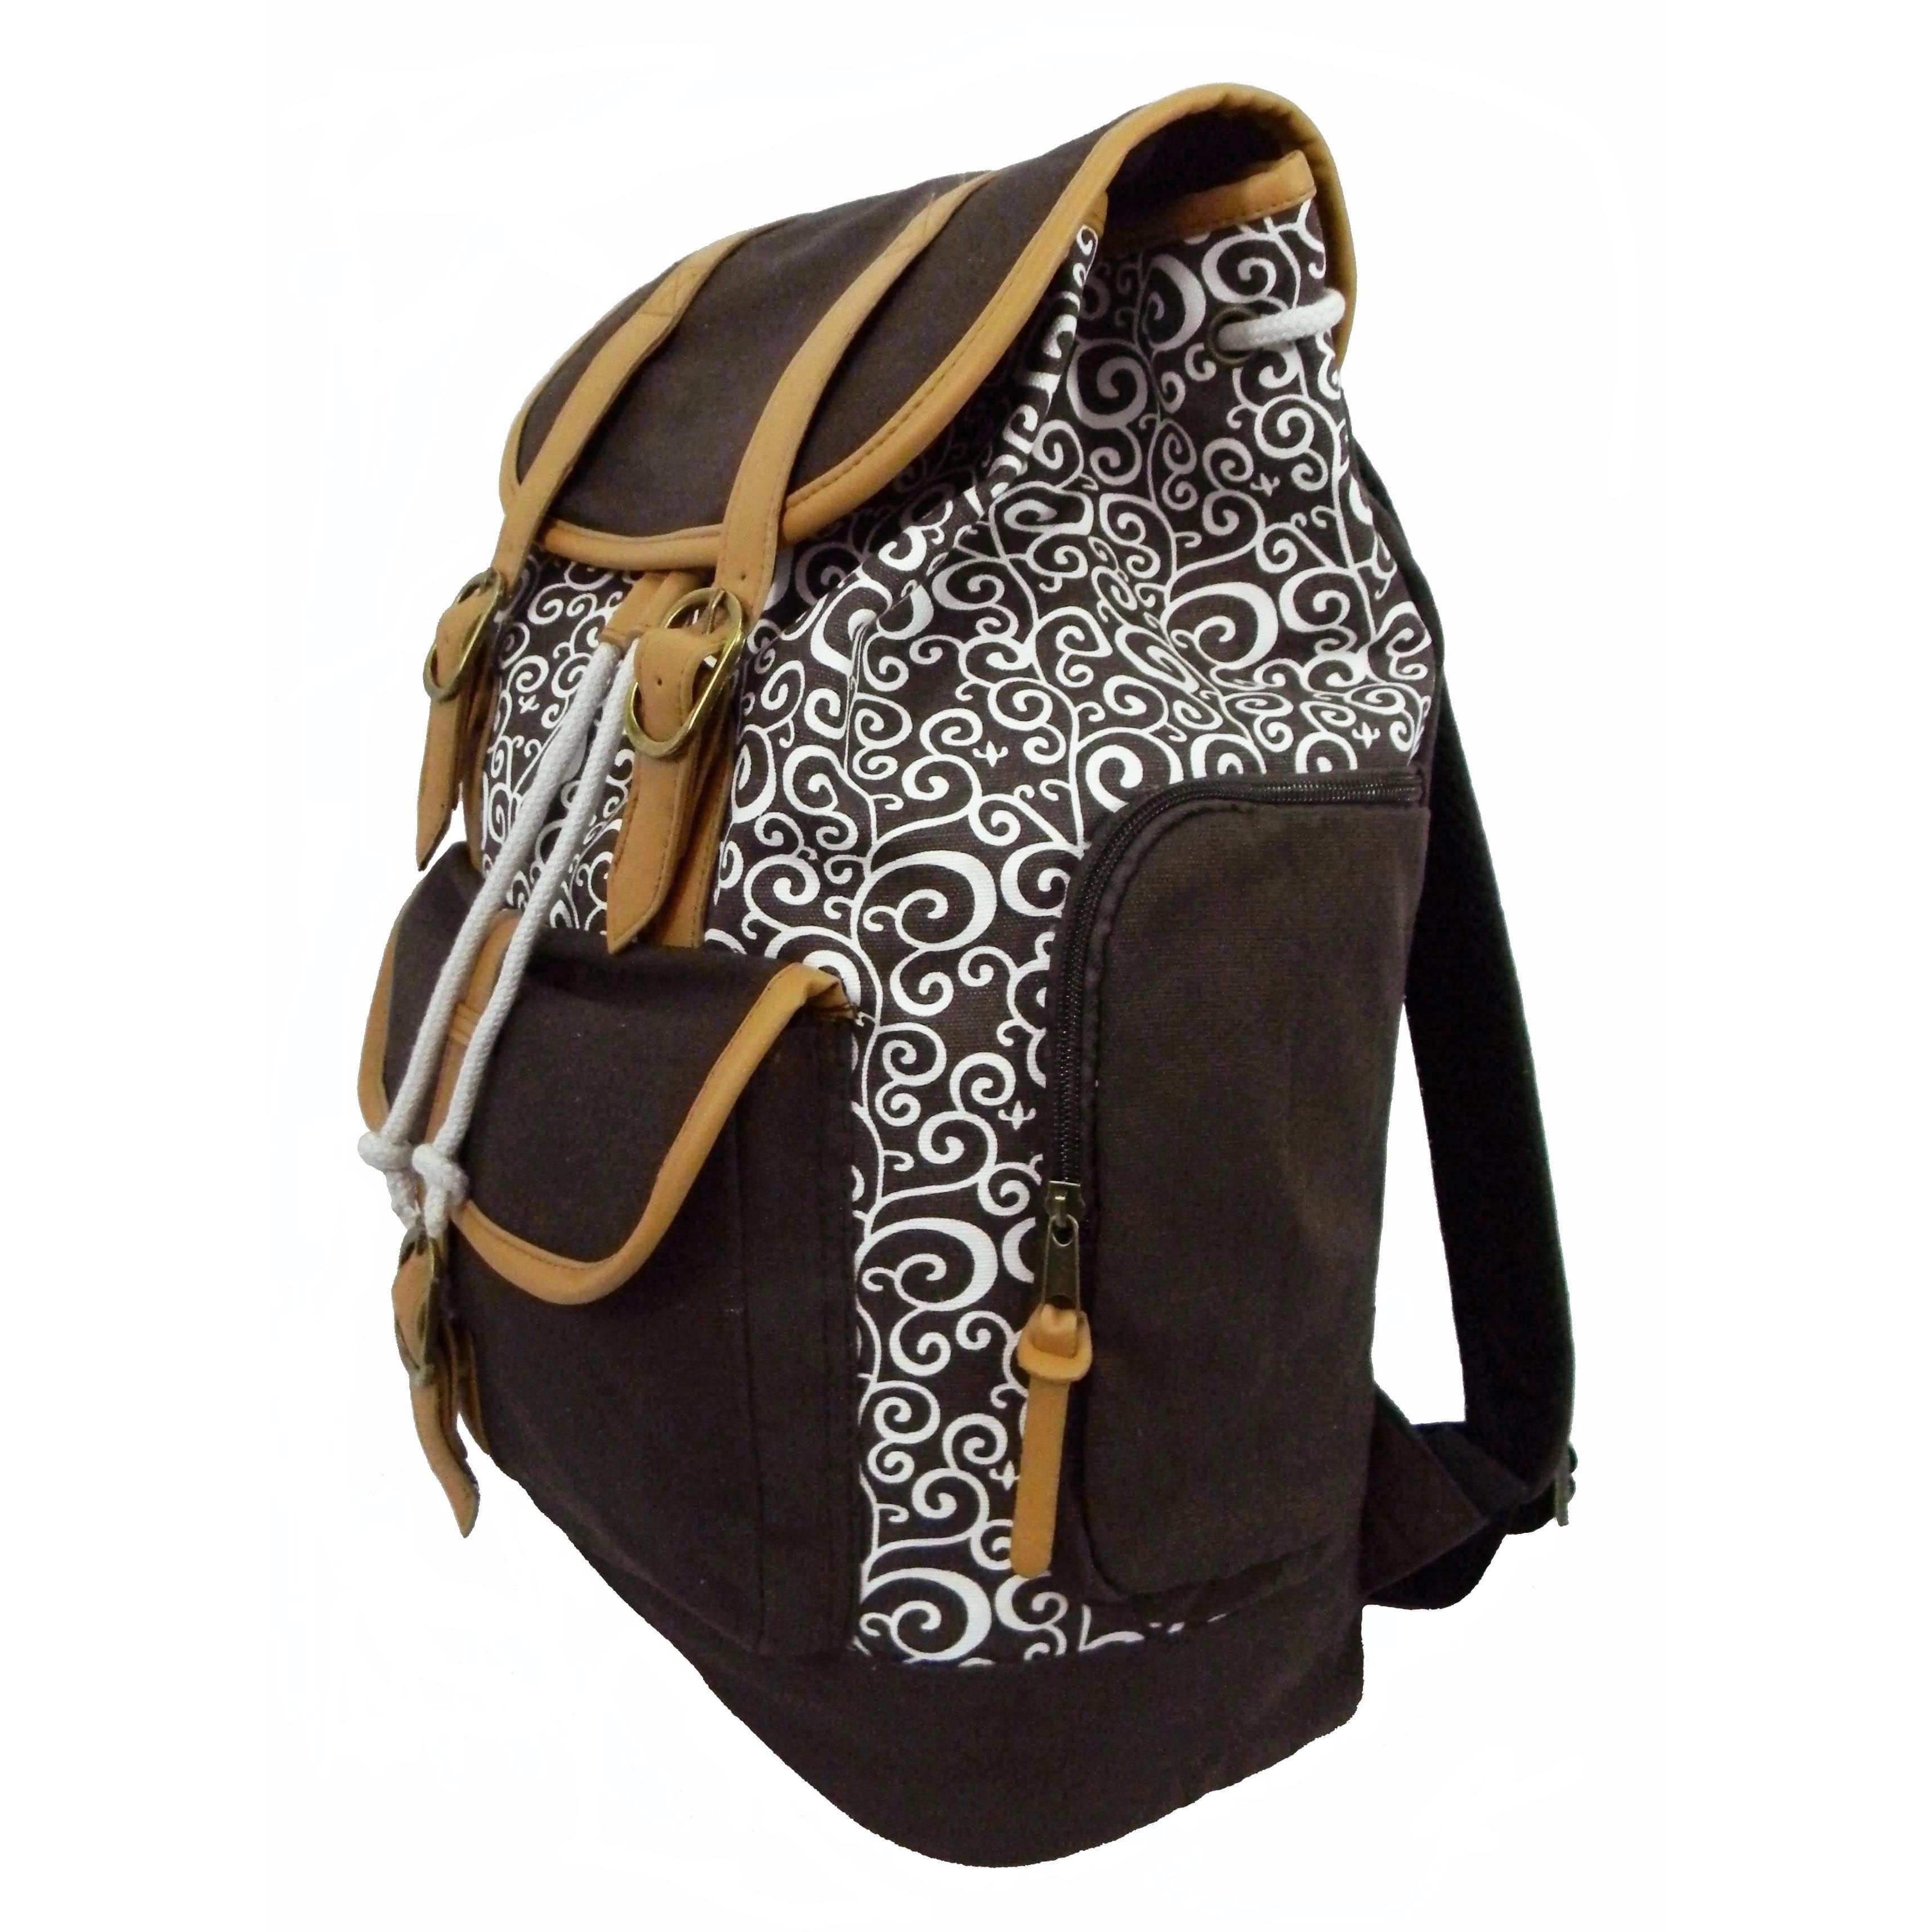 Lightweight MAPOLO Laptop Backpack Leaves Black Pattern Casual Shoulder Daypack for Student School Bag Handbag 